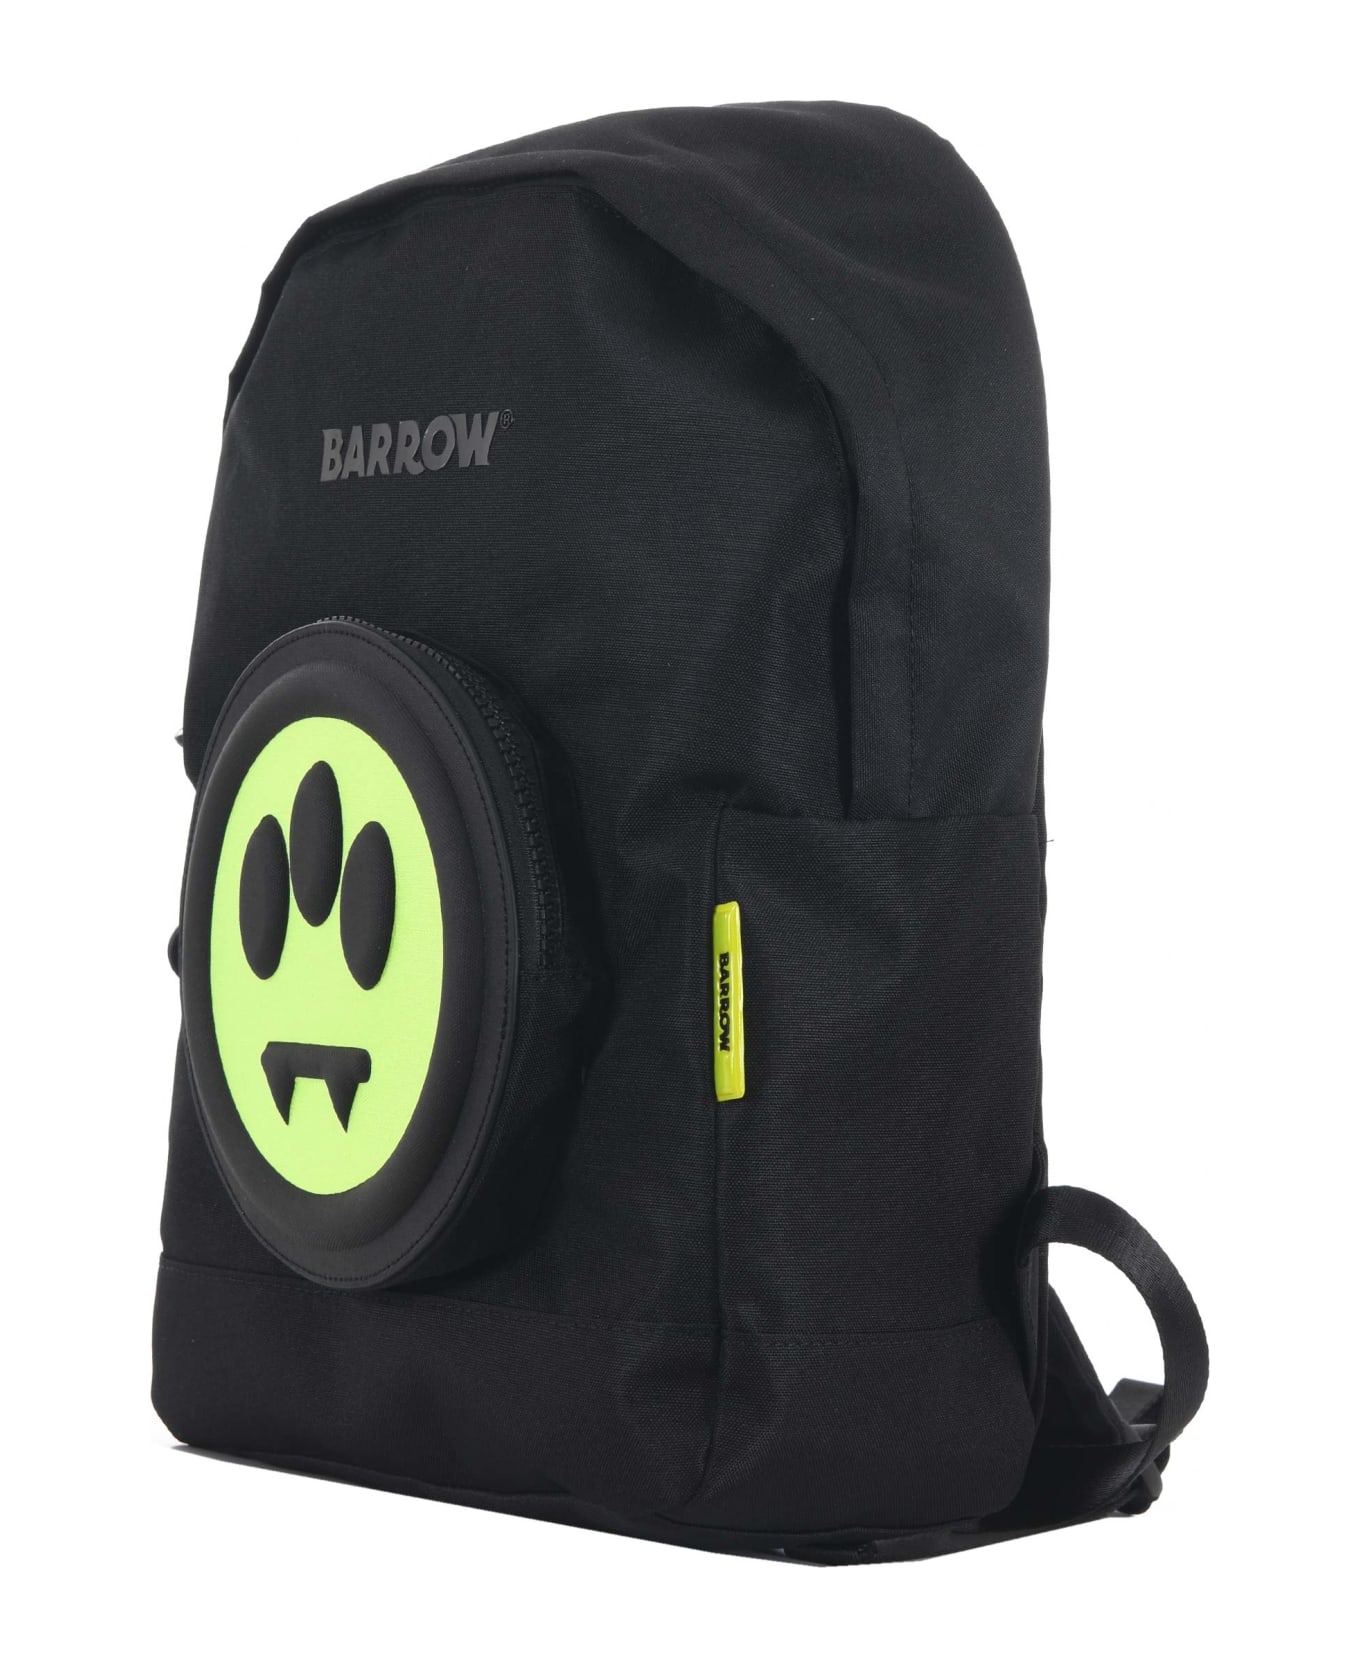 Barrow Backpack - Nero/giallo fluo